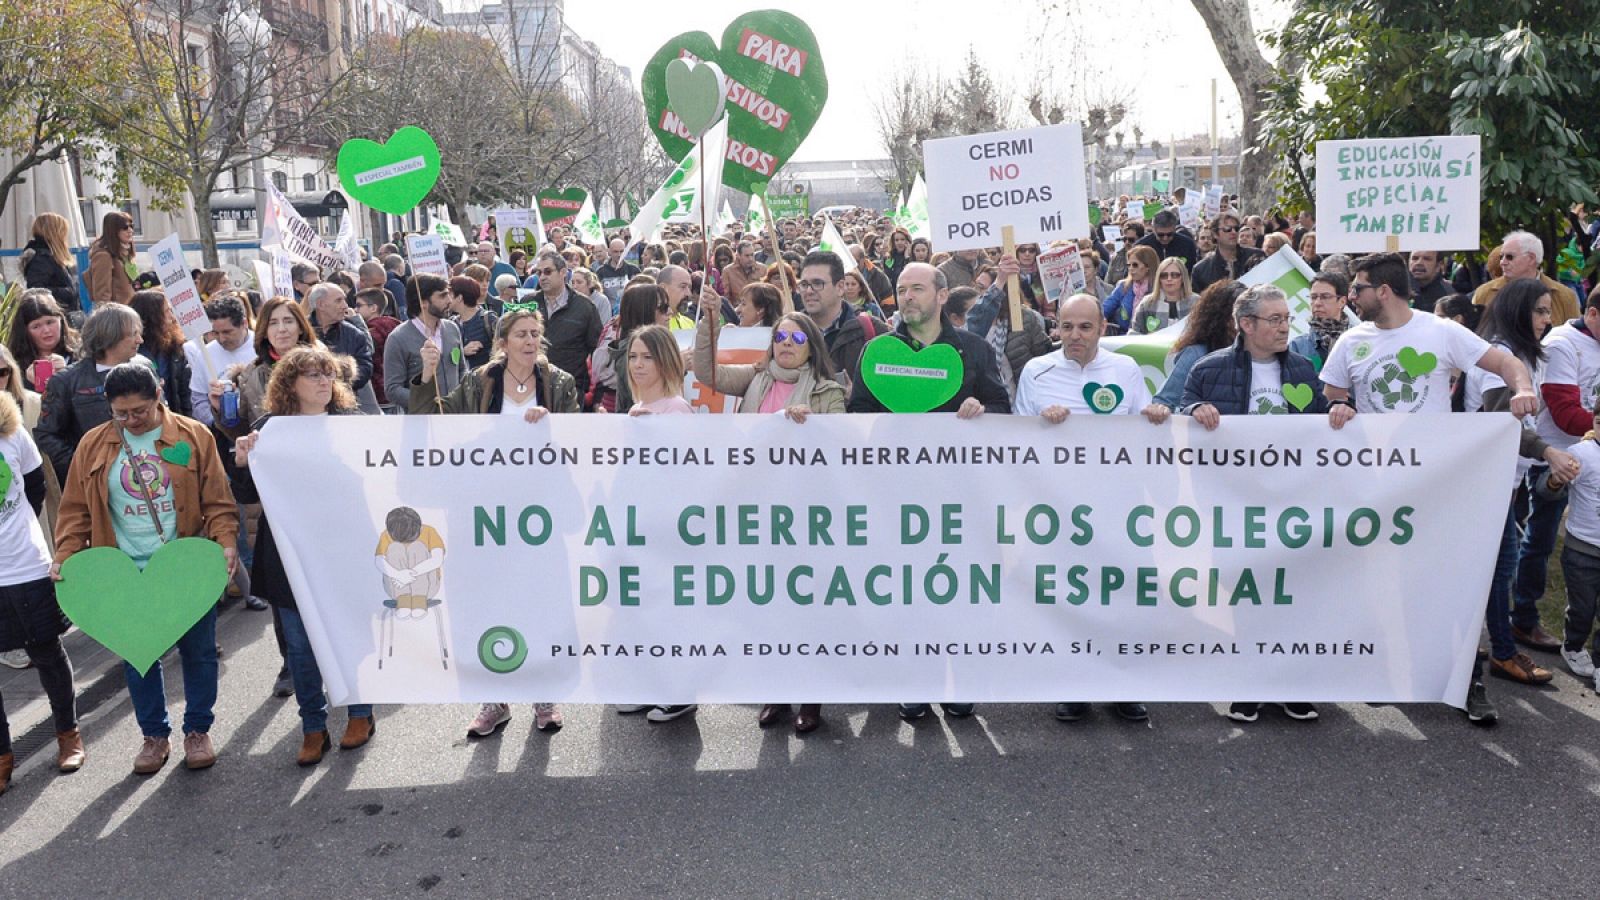 Manifestación en Valladolid para defender la educación especial como una modalidad más de escolarización